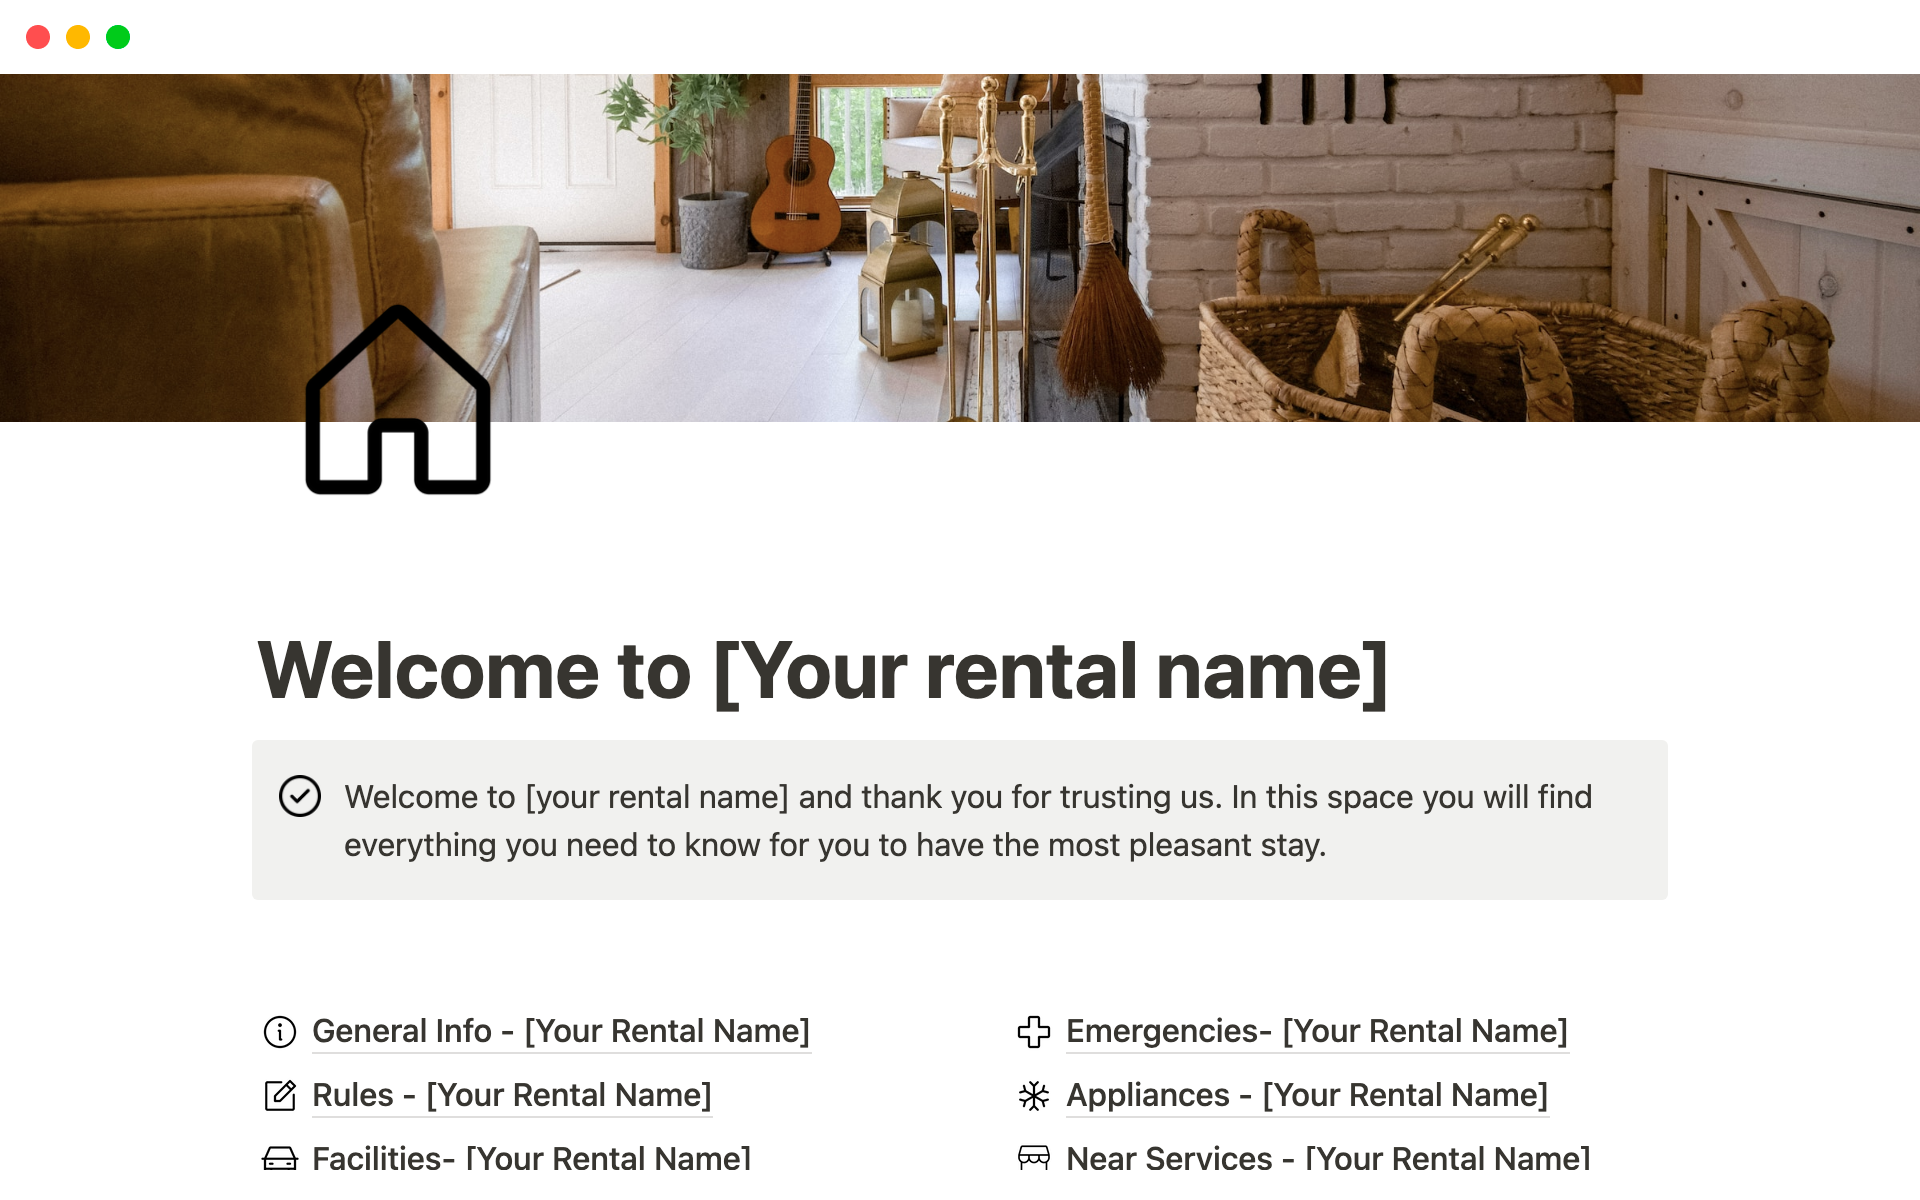 Vista previa de plantilla para Airbnb Instructions Sheet